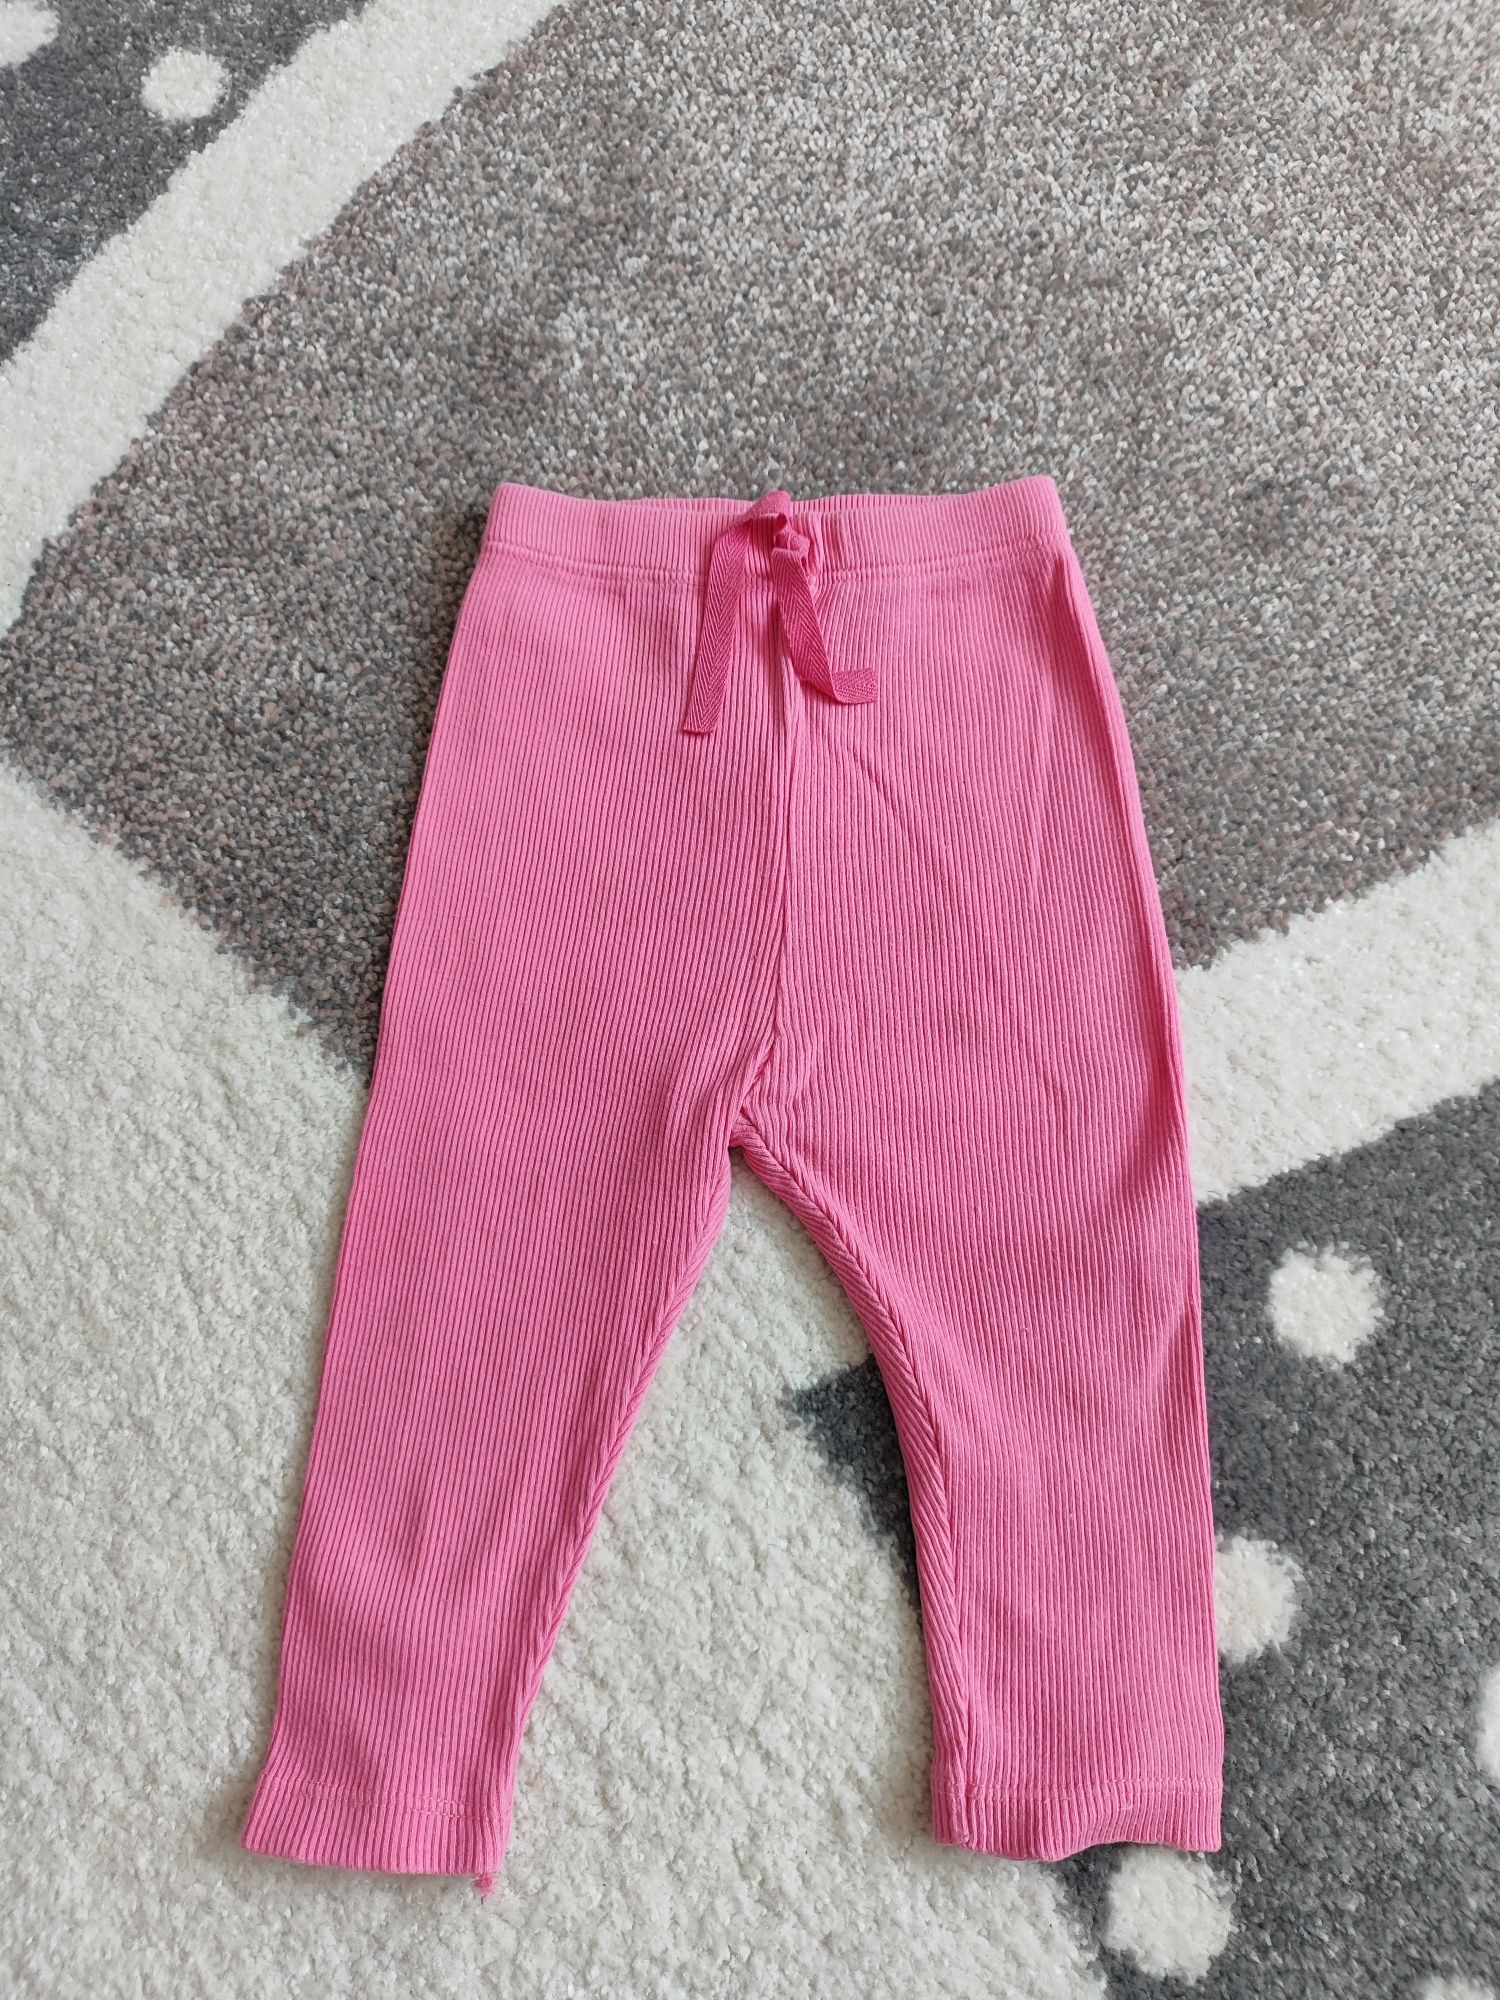 Spodnie różowe, Zara, 74